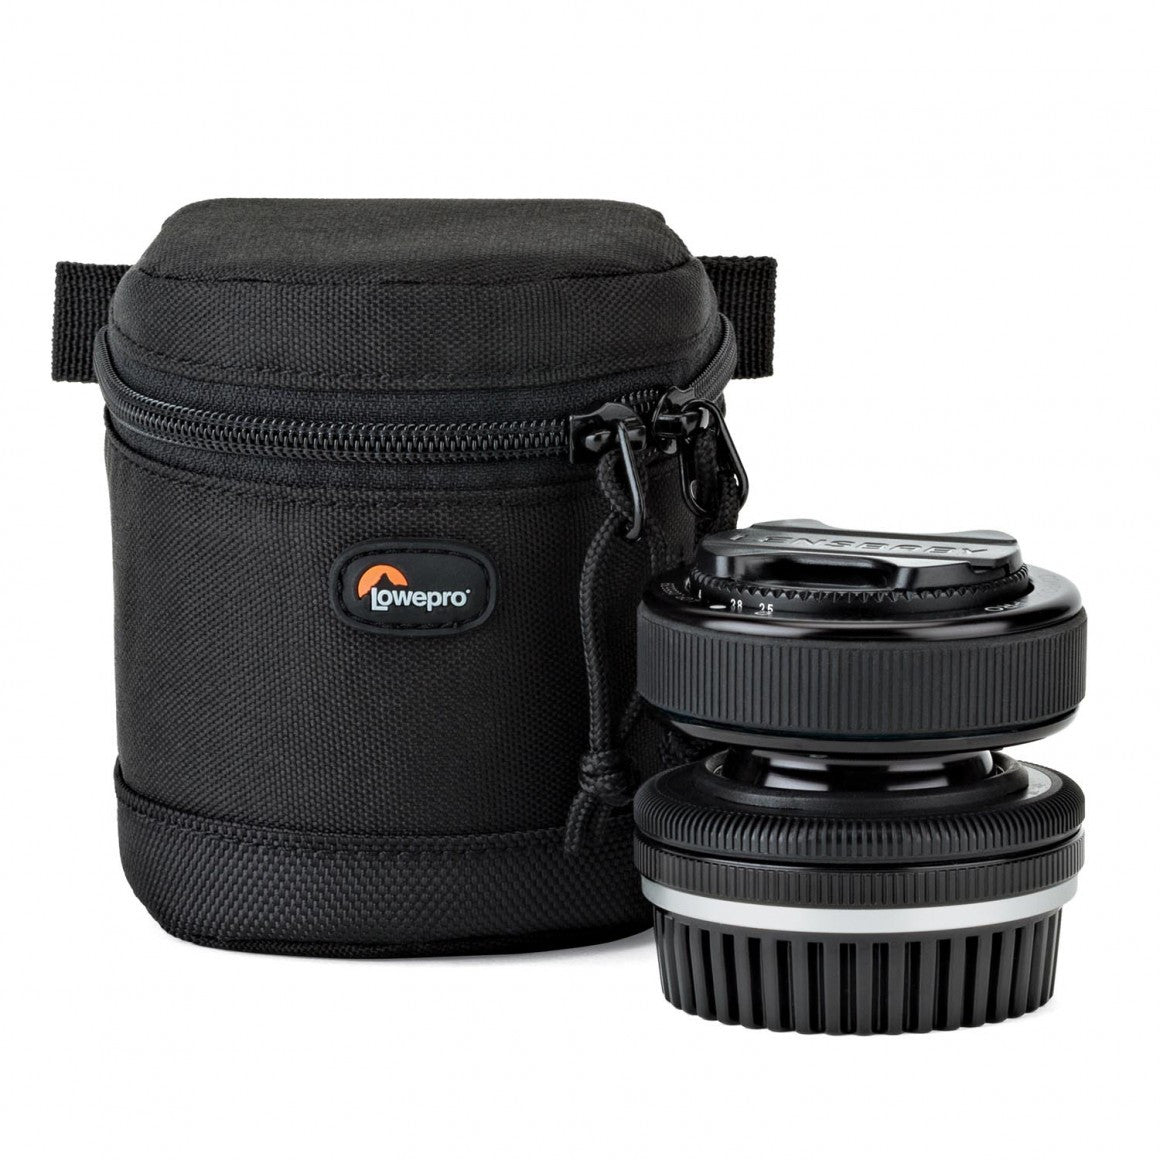 Lowepro Lens Case 7x8cm, bags lens cases, Lowepro - Pictureline  - 2